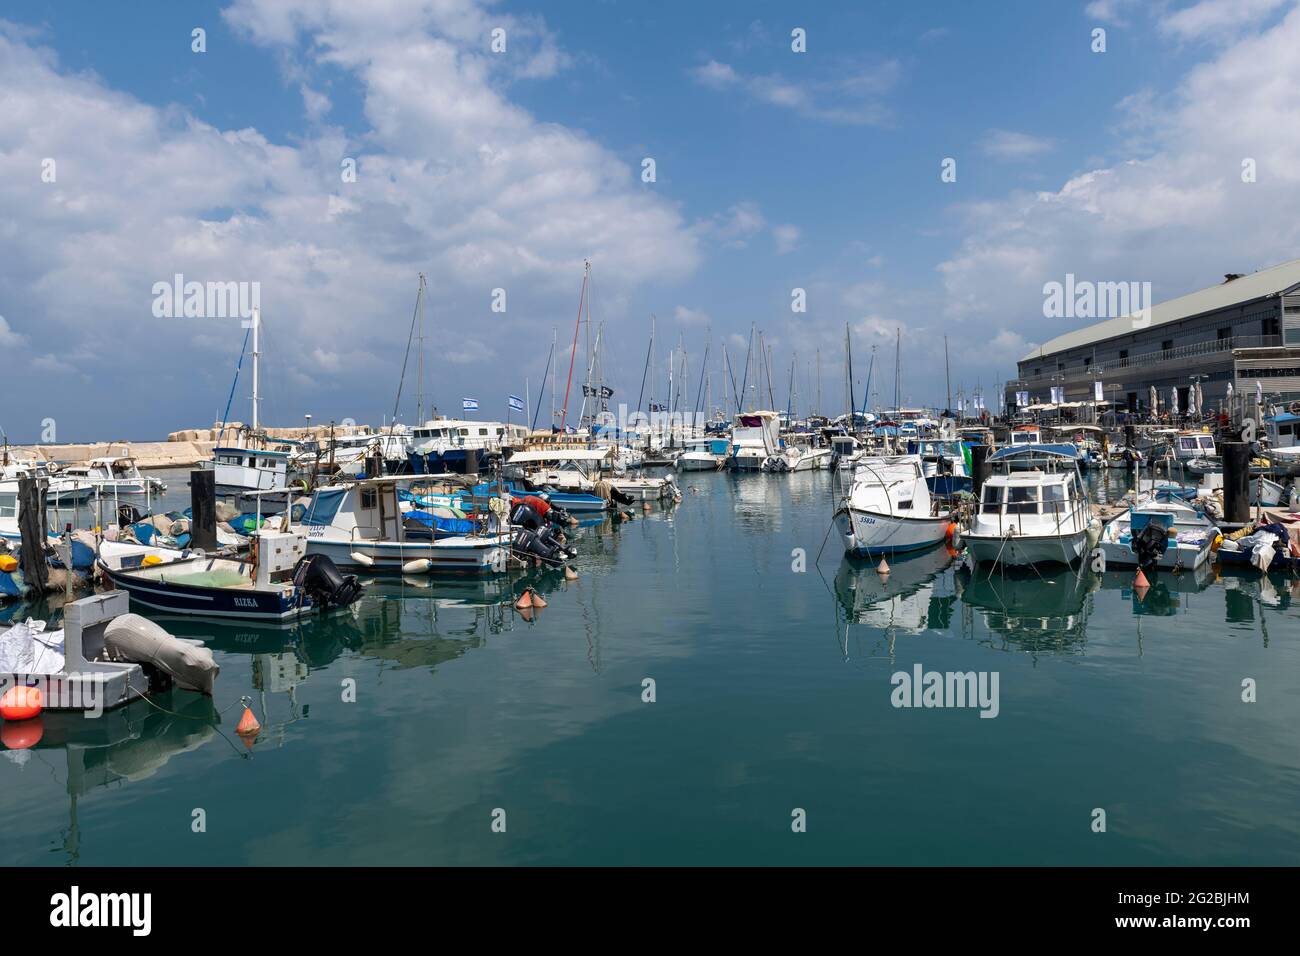 Bateaux de pêche, yachts et bateaux touristiques à l'ancienne marina de Jaffa. Tel Aviv. Israël Banque D'Images